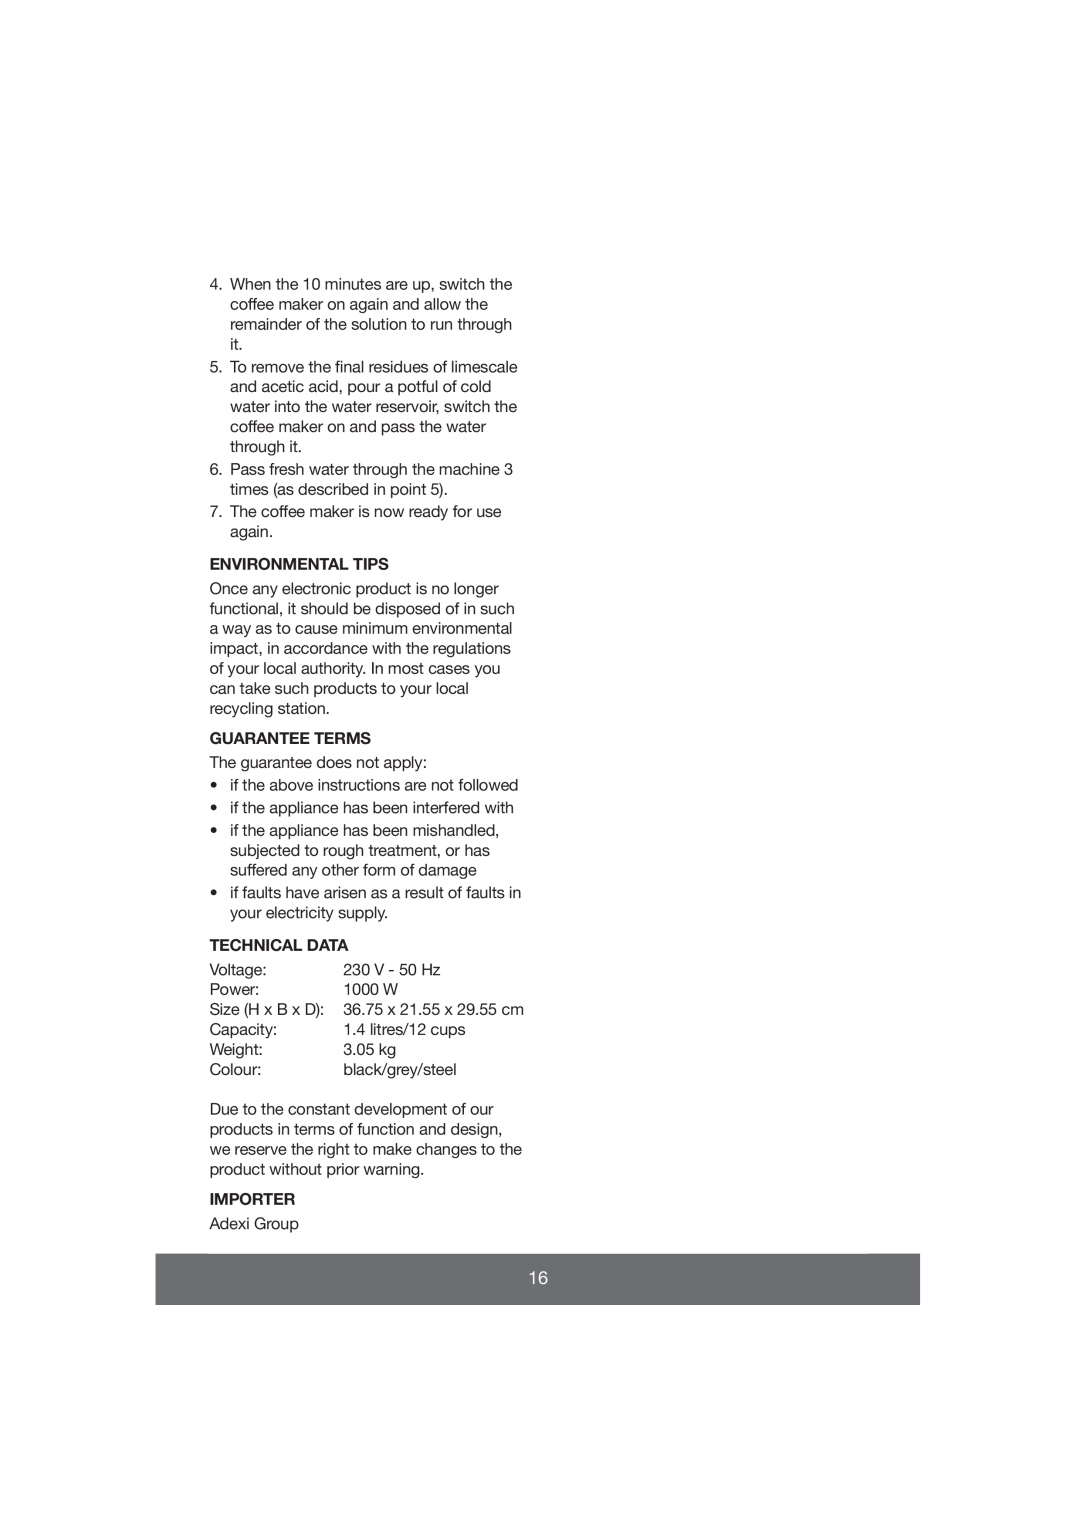 Butler 645-061 manual Environmental Tips, Guarantee Terms, Technical Data, Importer 